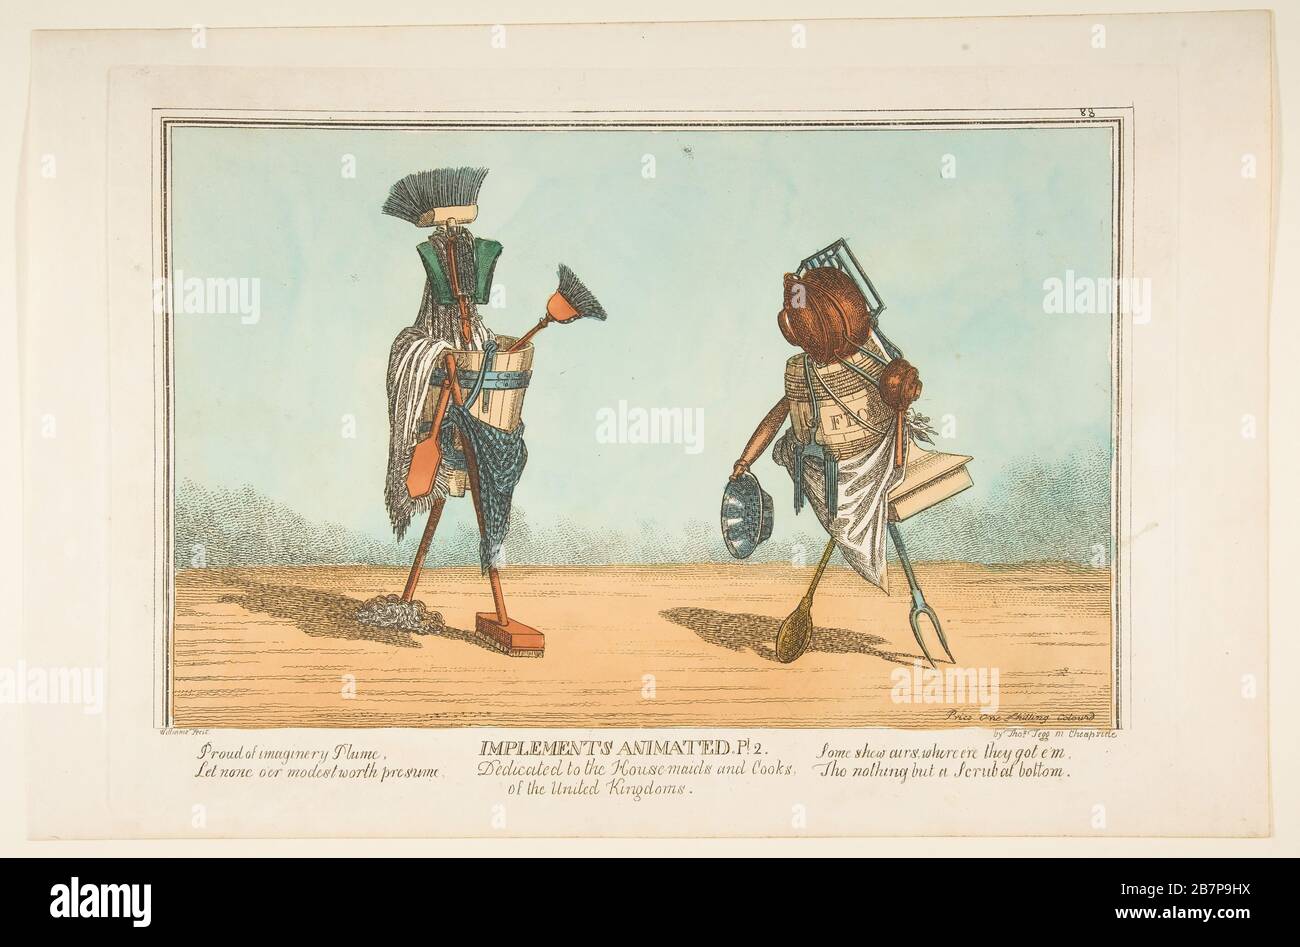 Attrezzi animati, pl. 2, dedicata alle cameriere e ai cuochi dei Regno Unito, ca. 1811. Foto Stock